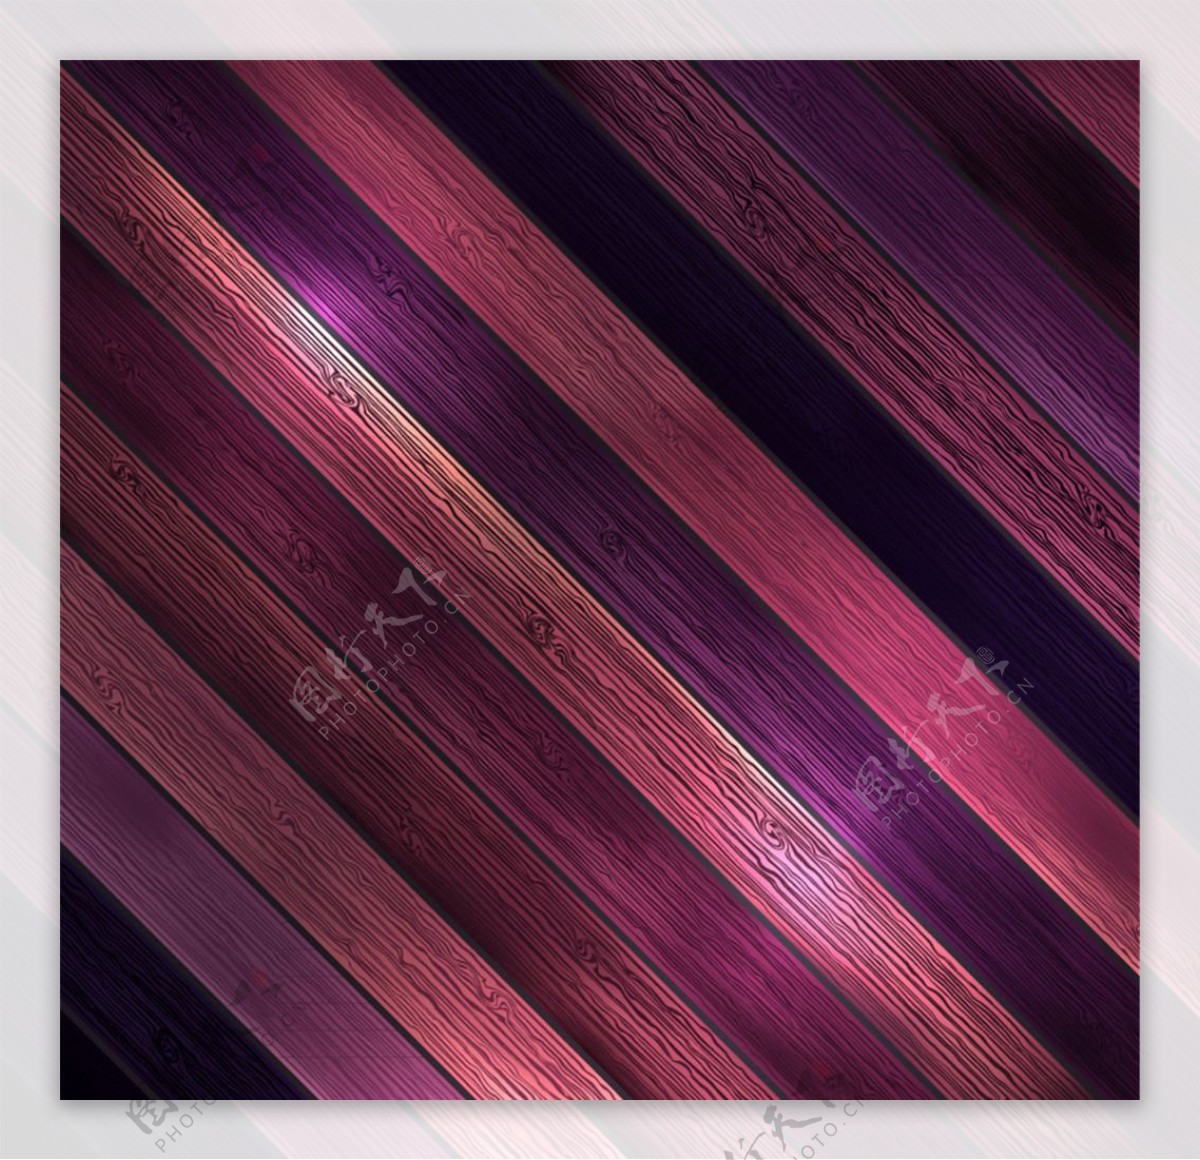 紫色斜纹木板背景矢量素材